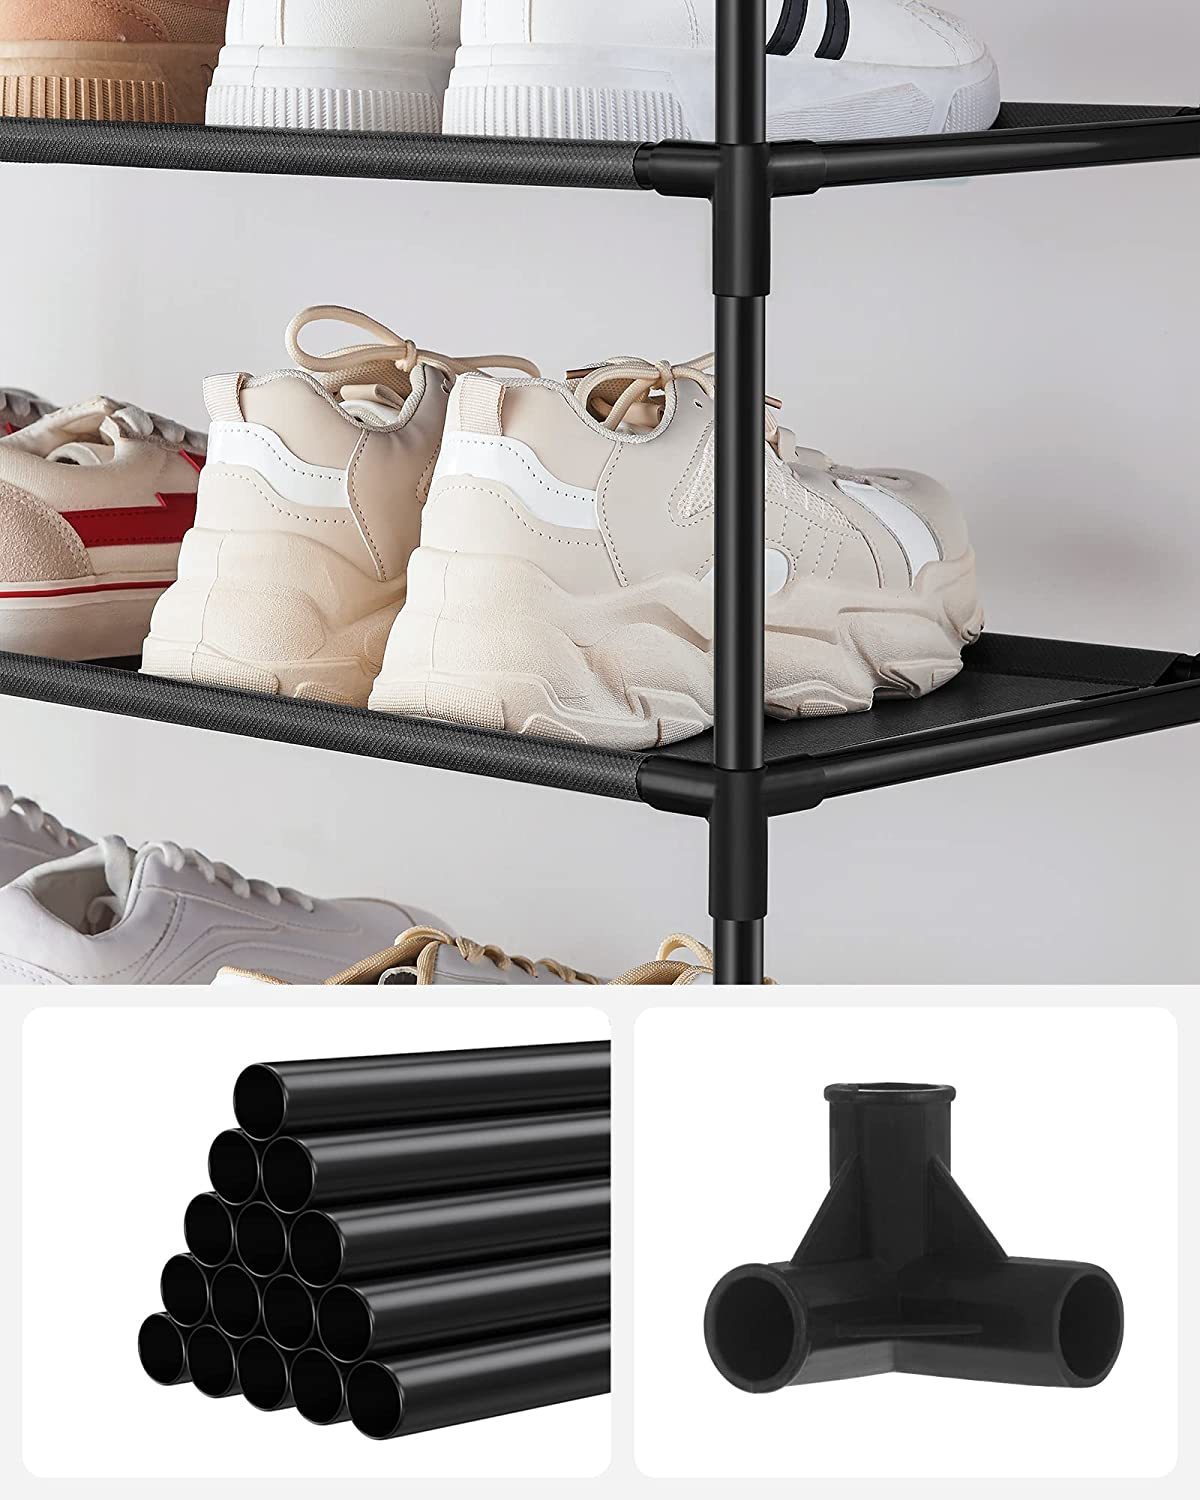 KIMBORA 4 Tier Long Shoe Rack for Closet, Wide Shoe Storage Organizer  Stackable Shoe Shelf for Floor, Bedroom 30-Pairs (Bronze)